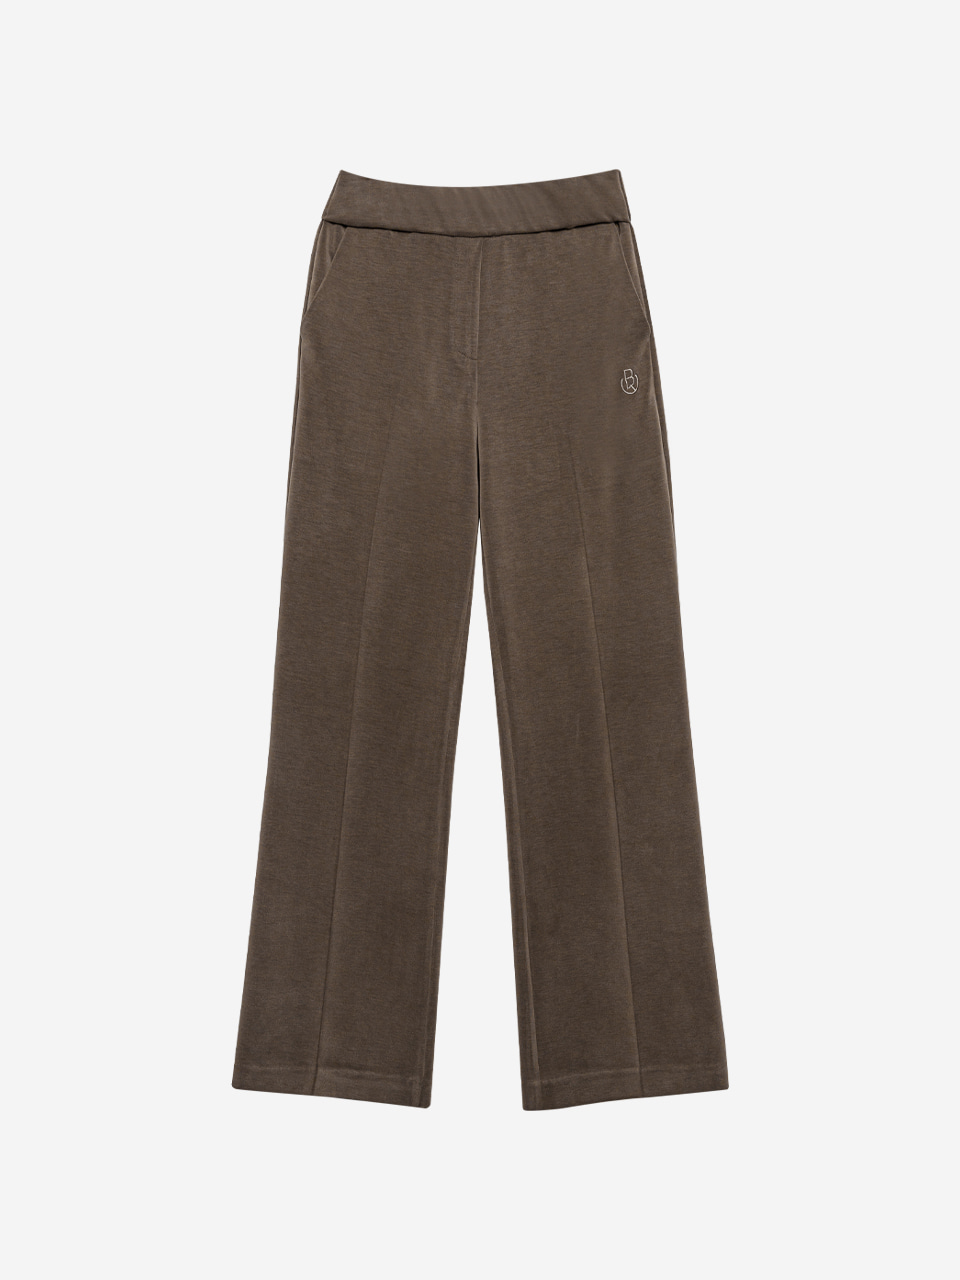 Modal Straight Pants (khaki brown)